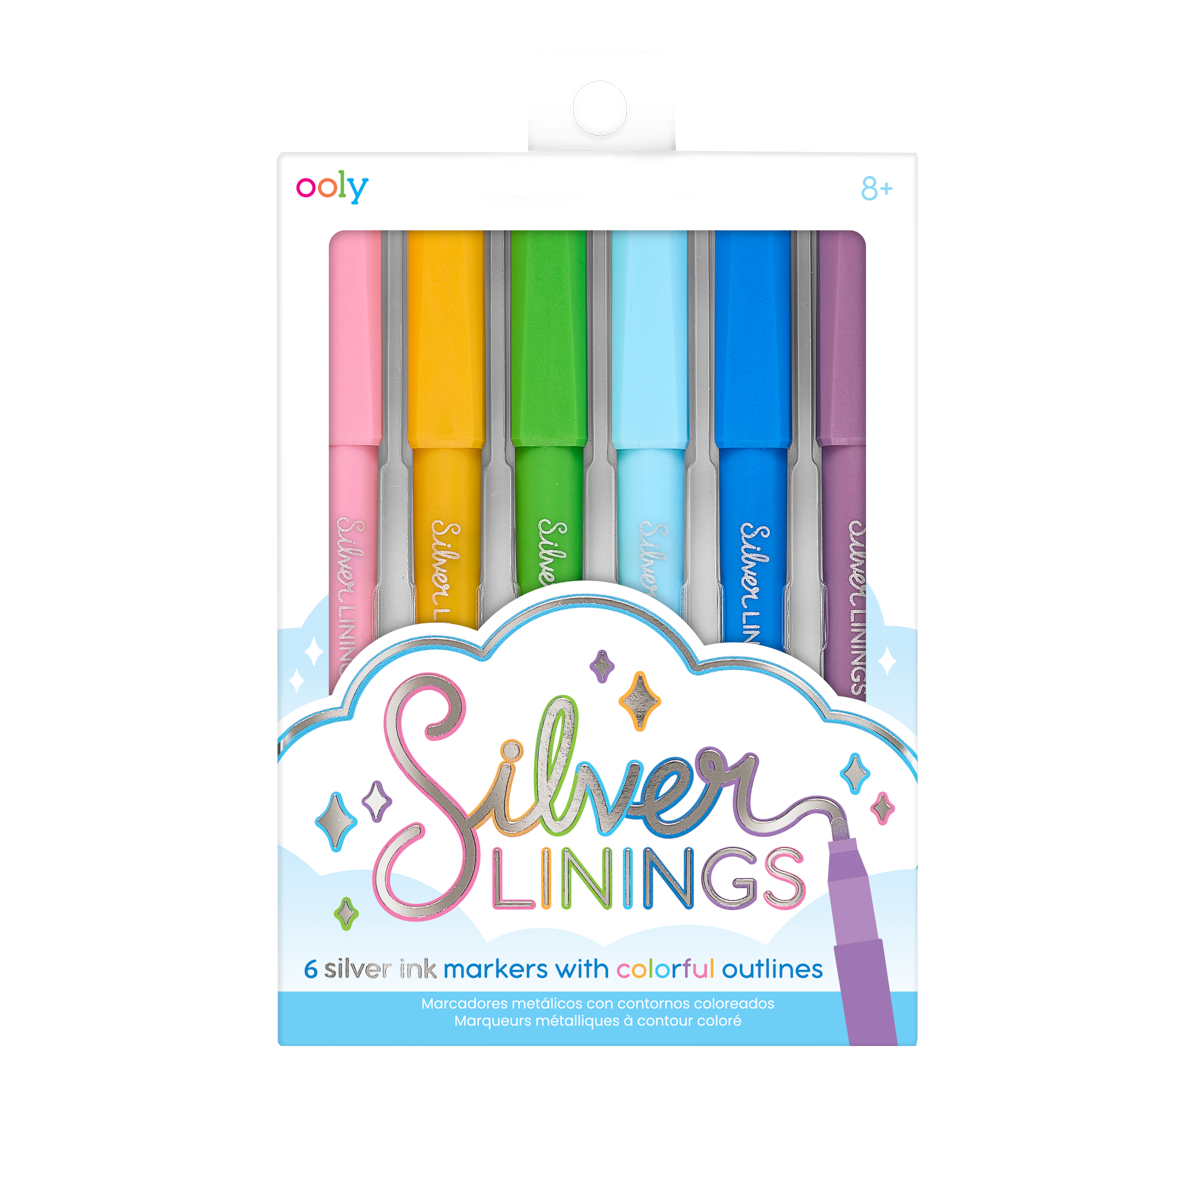 Outline Markers: Outliner Pen, Outline Marker Pens & Metallic